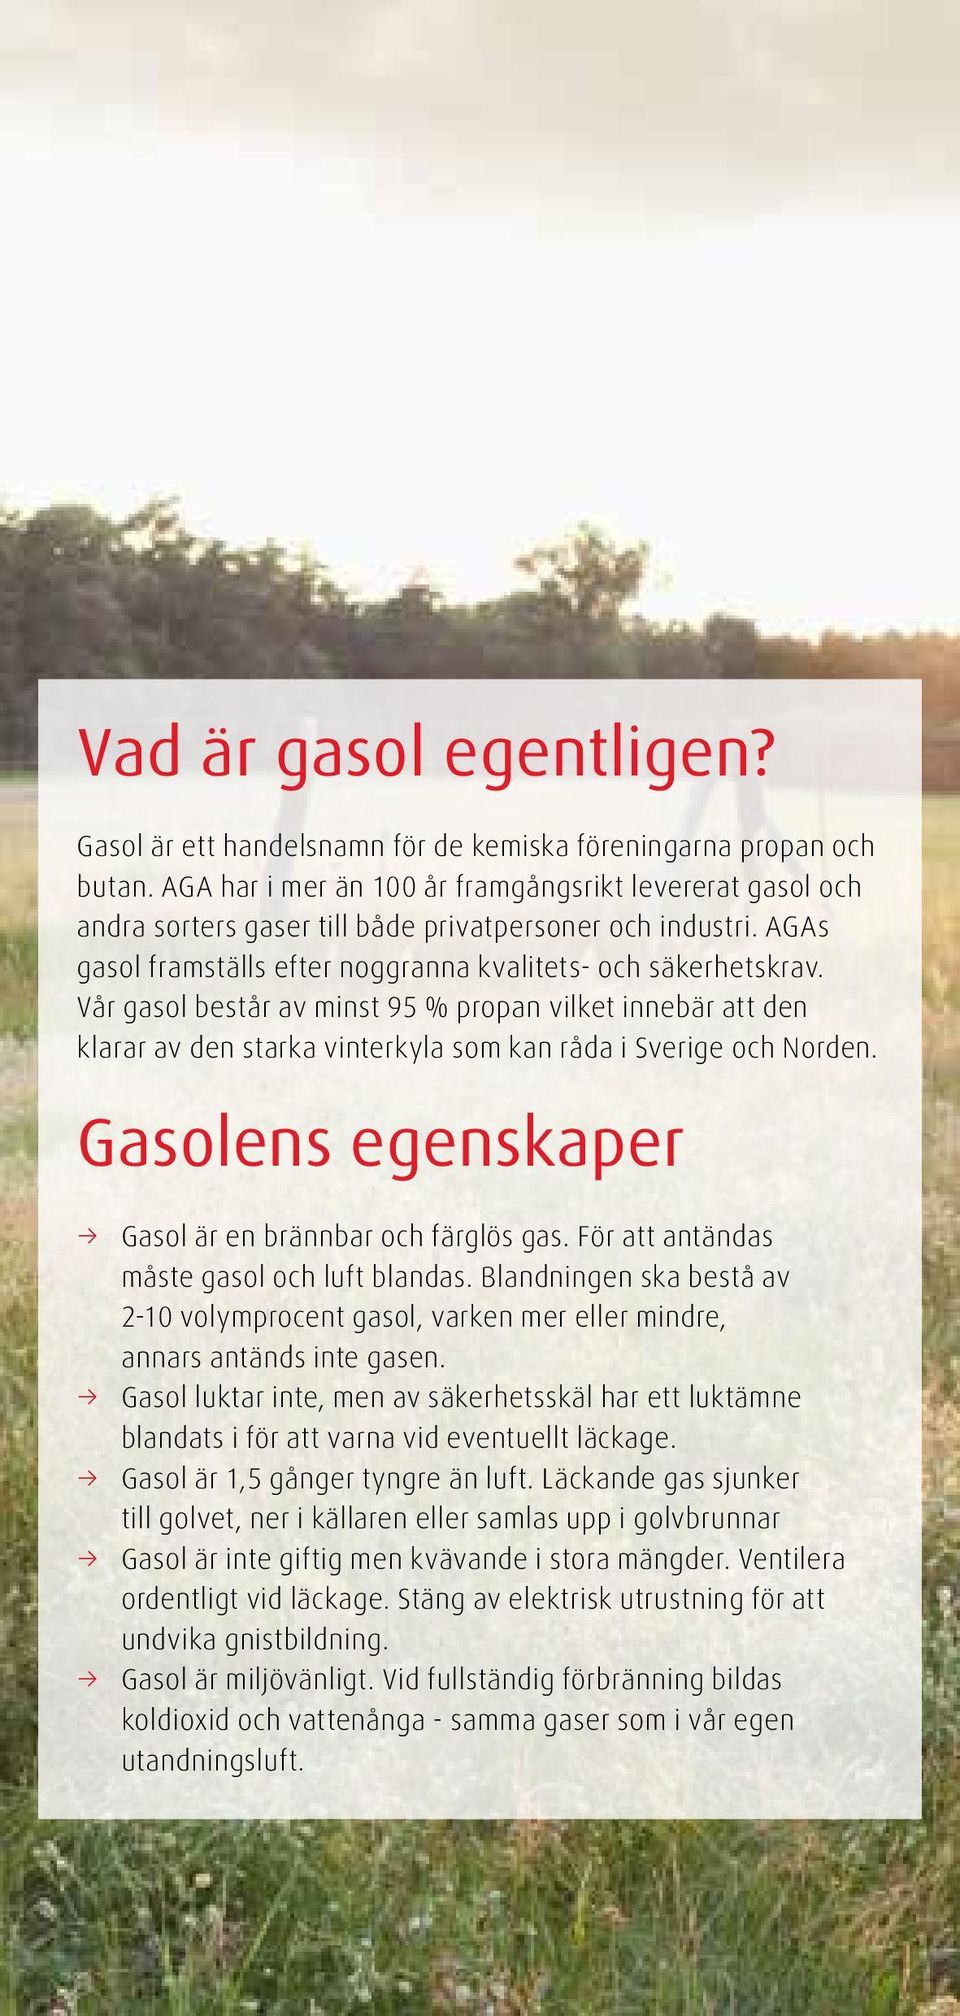 Vår gasol består av minst 95 % propan vilket innebär att den klarar av den starka vinterkyla som kan råda i Sverige och Norden. Gasolens egenskaper Gasol är en brännbar och färglös gas.